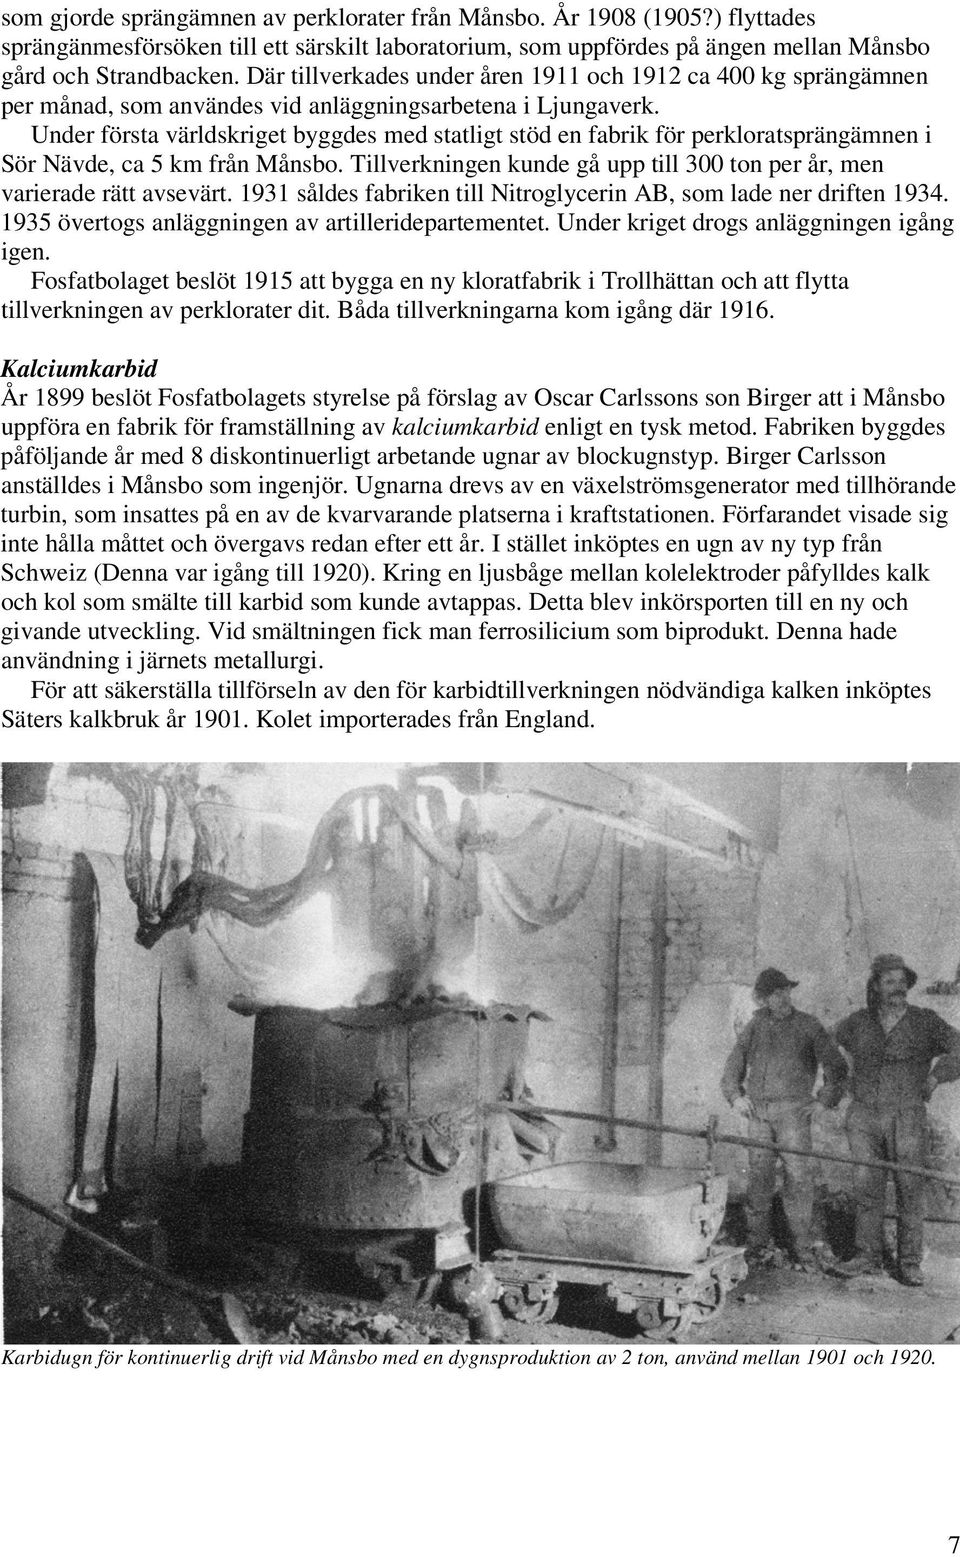 Under första världskriget byggdes med statligt stöd en fabrik för perkloratsprängämnen i Sör Nävde, ca 5 km från Månsbo. Tillverkningen kunde gå upp till 300 ton per år, men varierade rätt avsevärt.